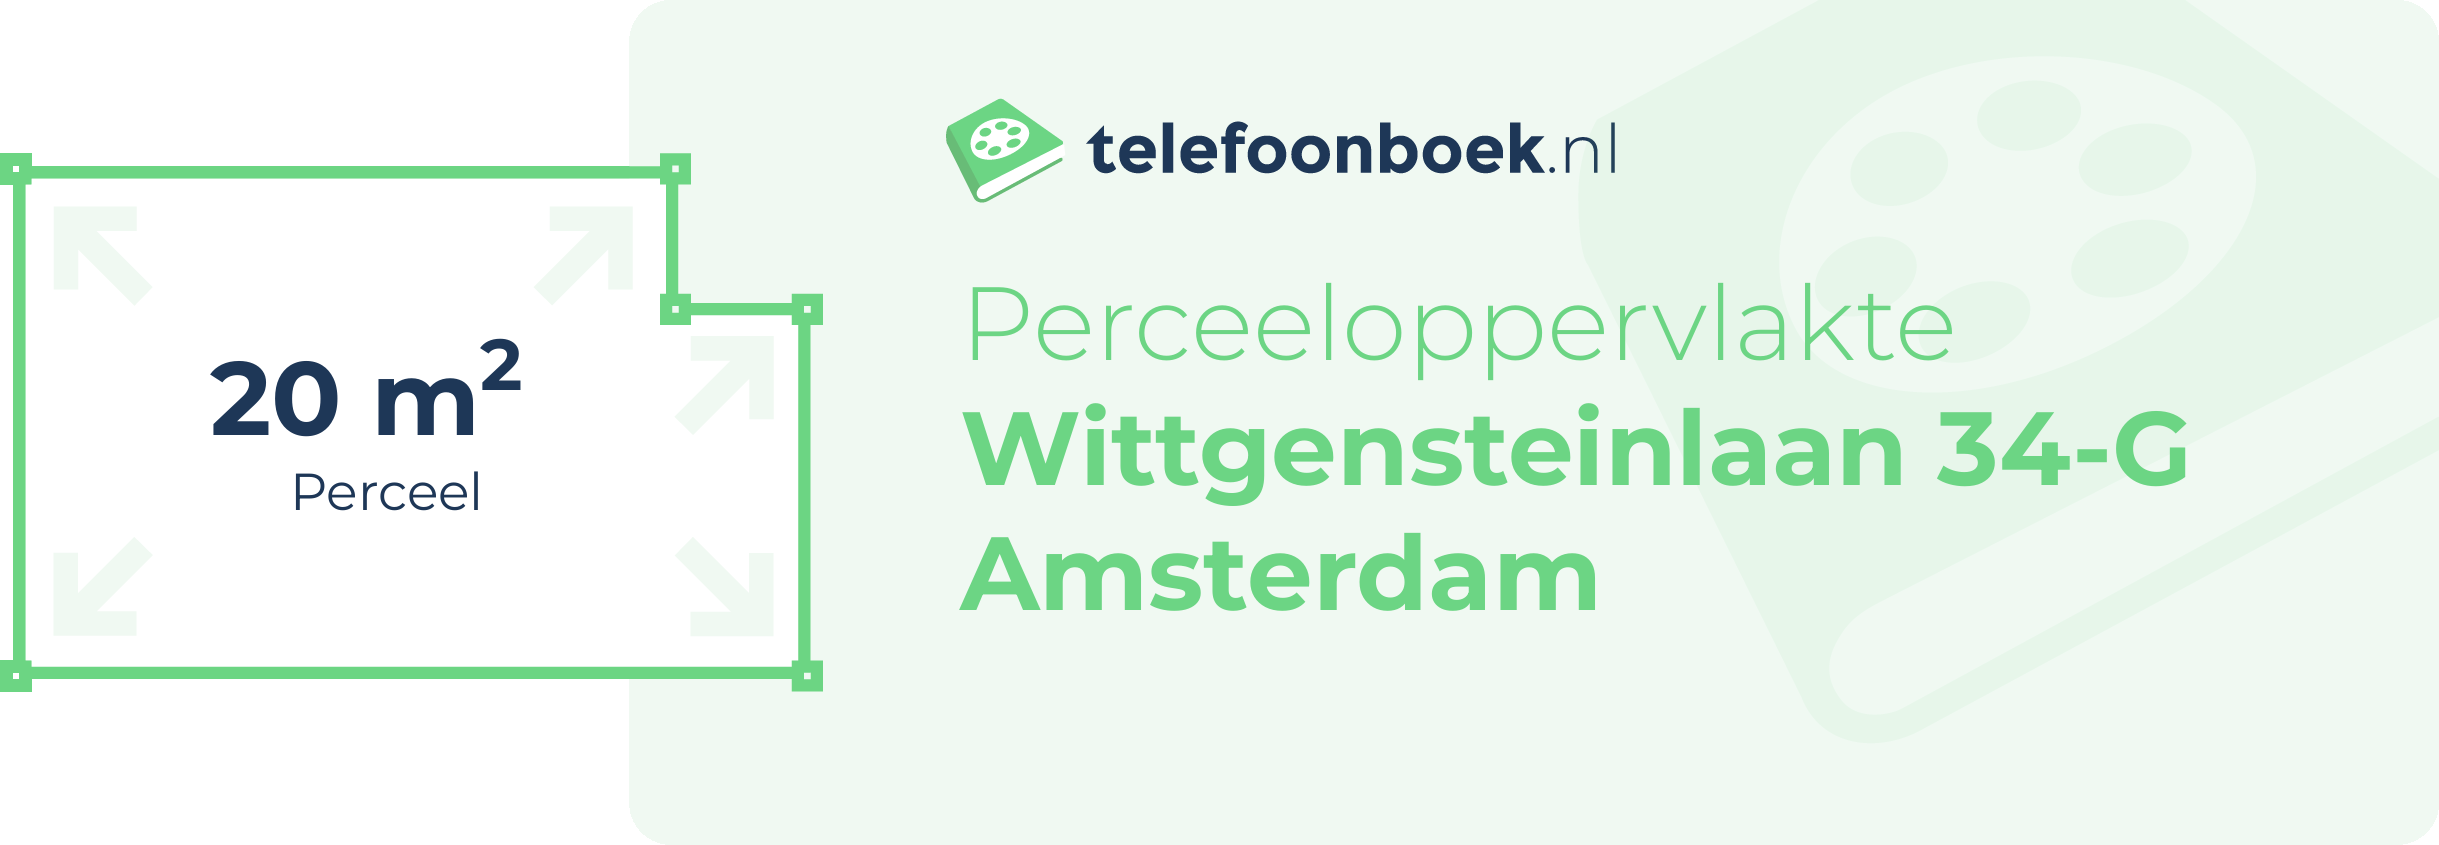 Perceeloppervlakte Wittgensteinlaan 34-G Amsterdam